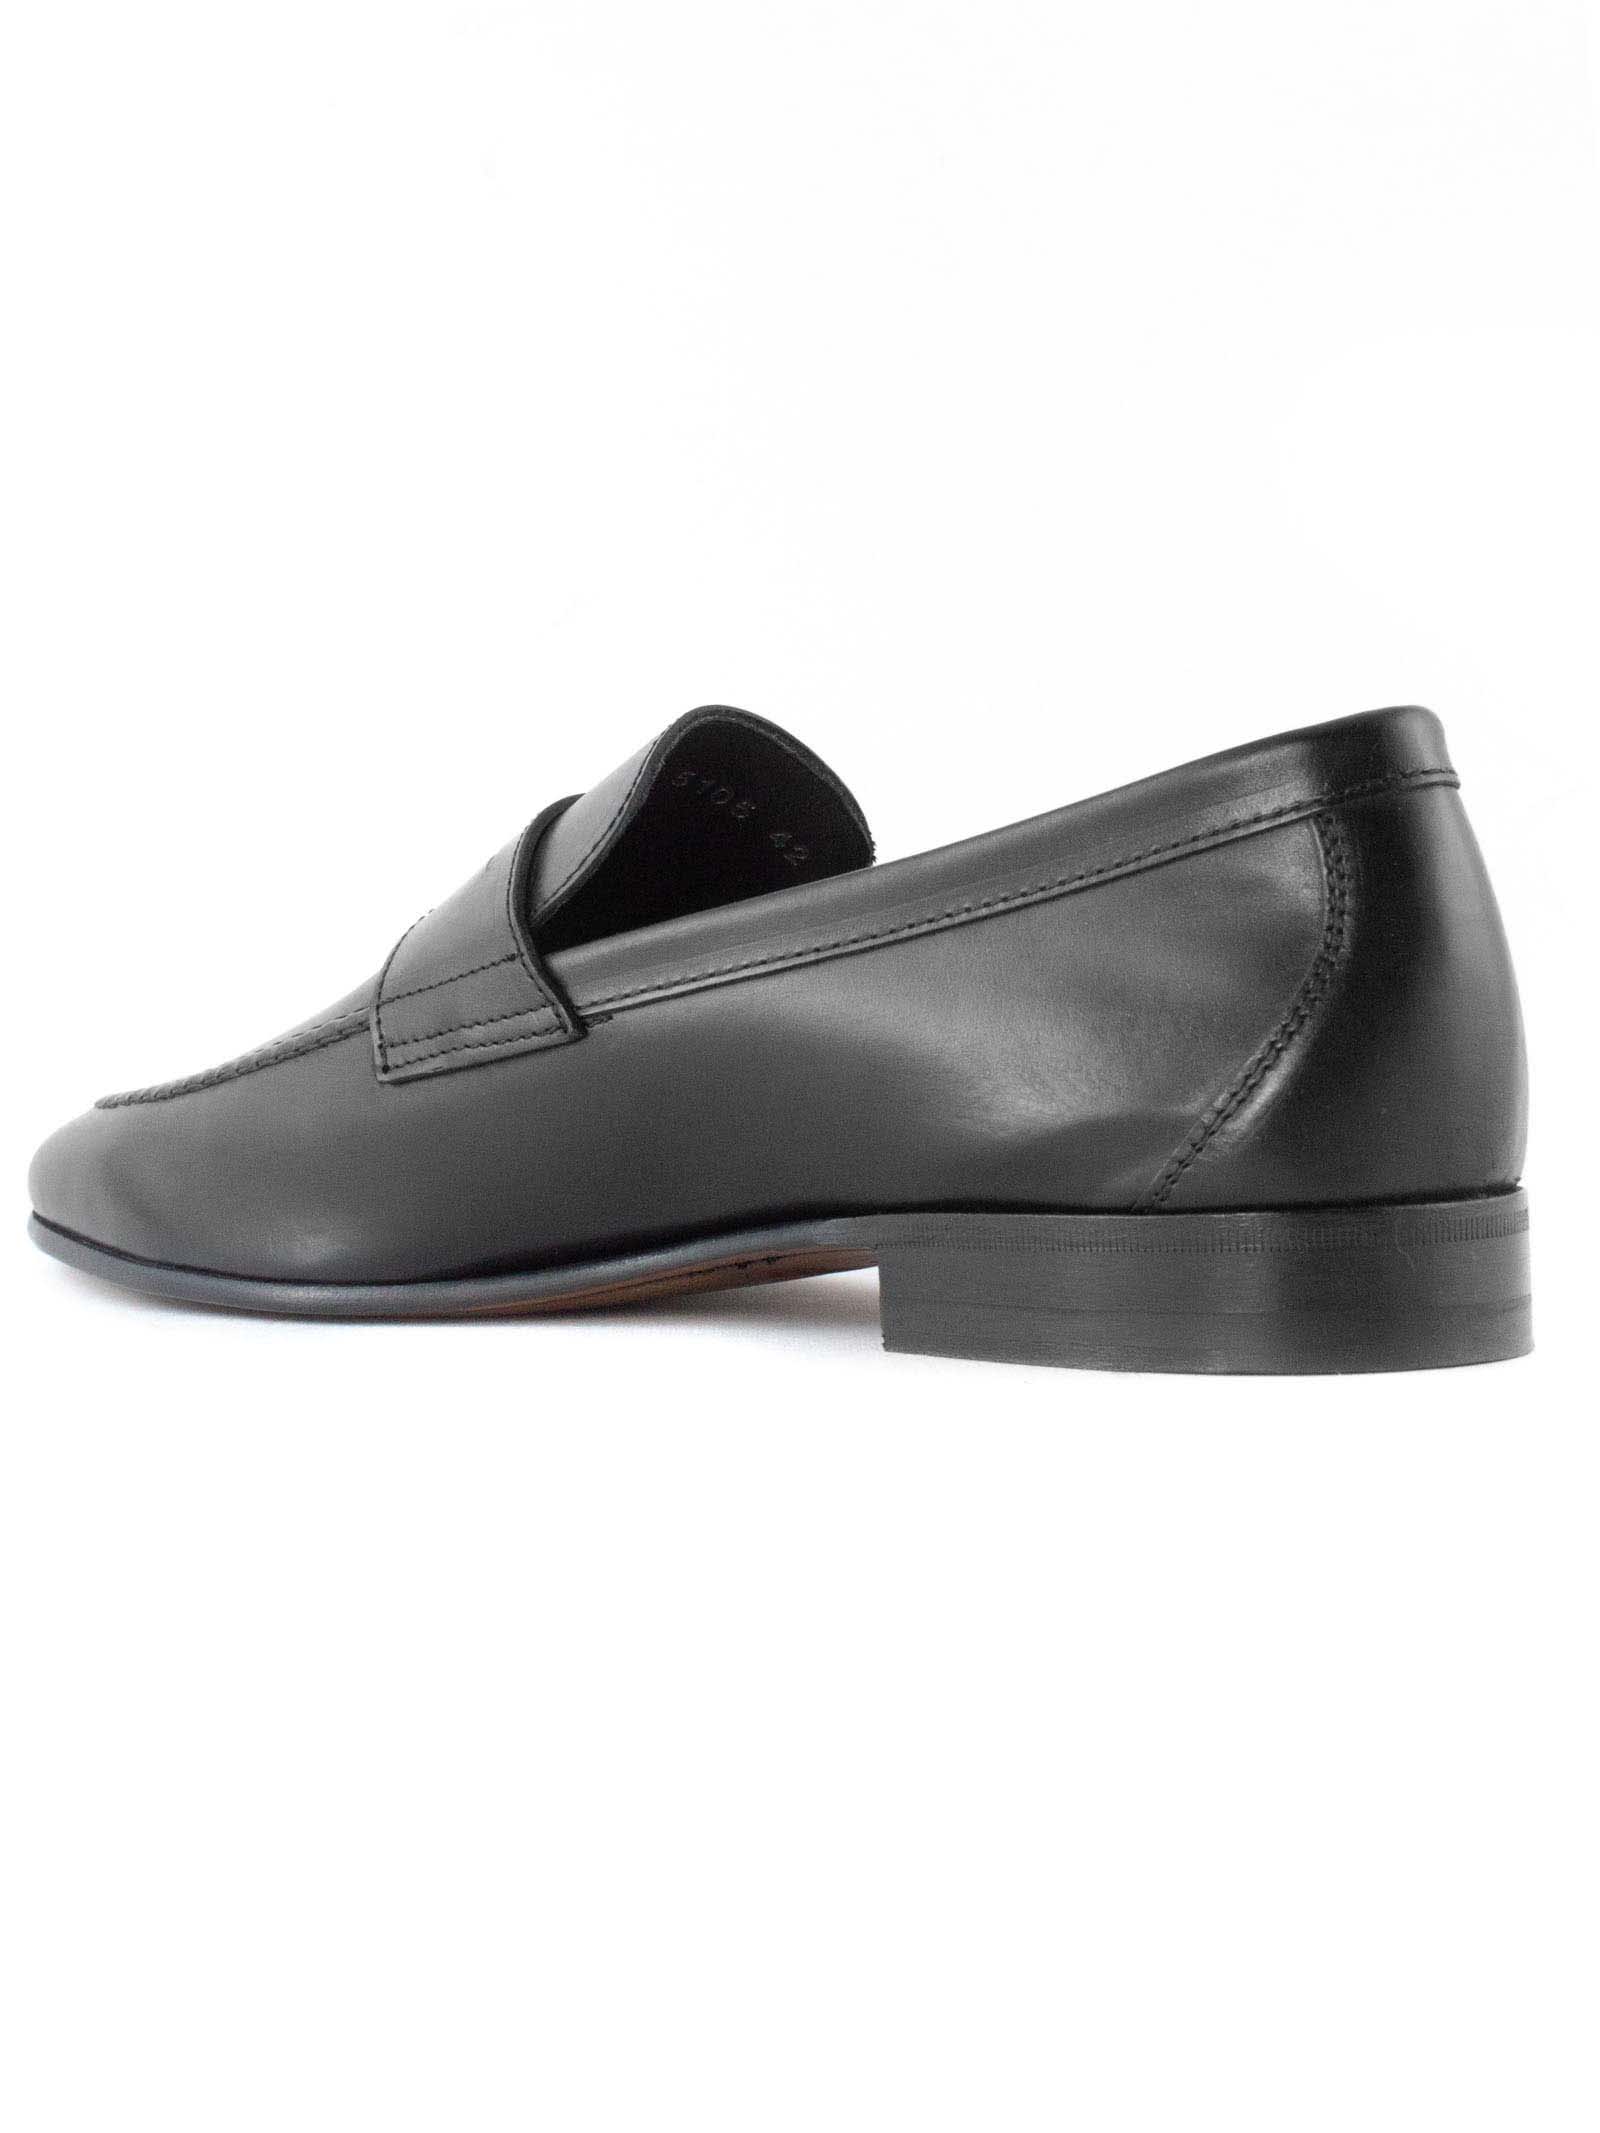 Shop Berwick 1707 Black Leather Loafer